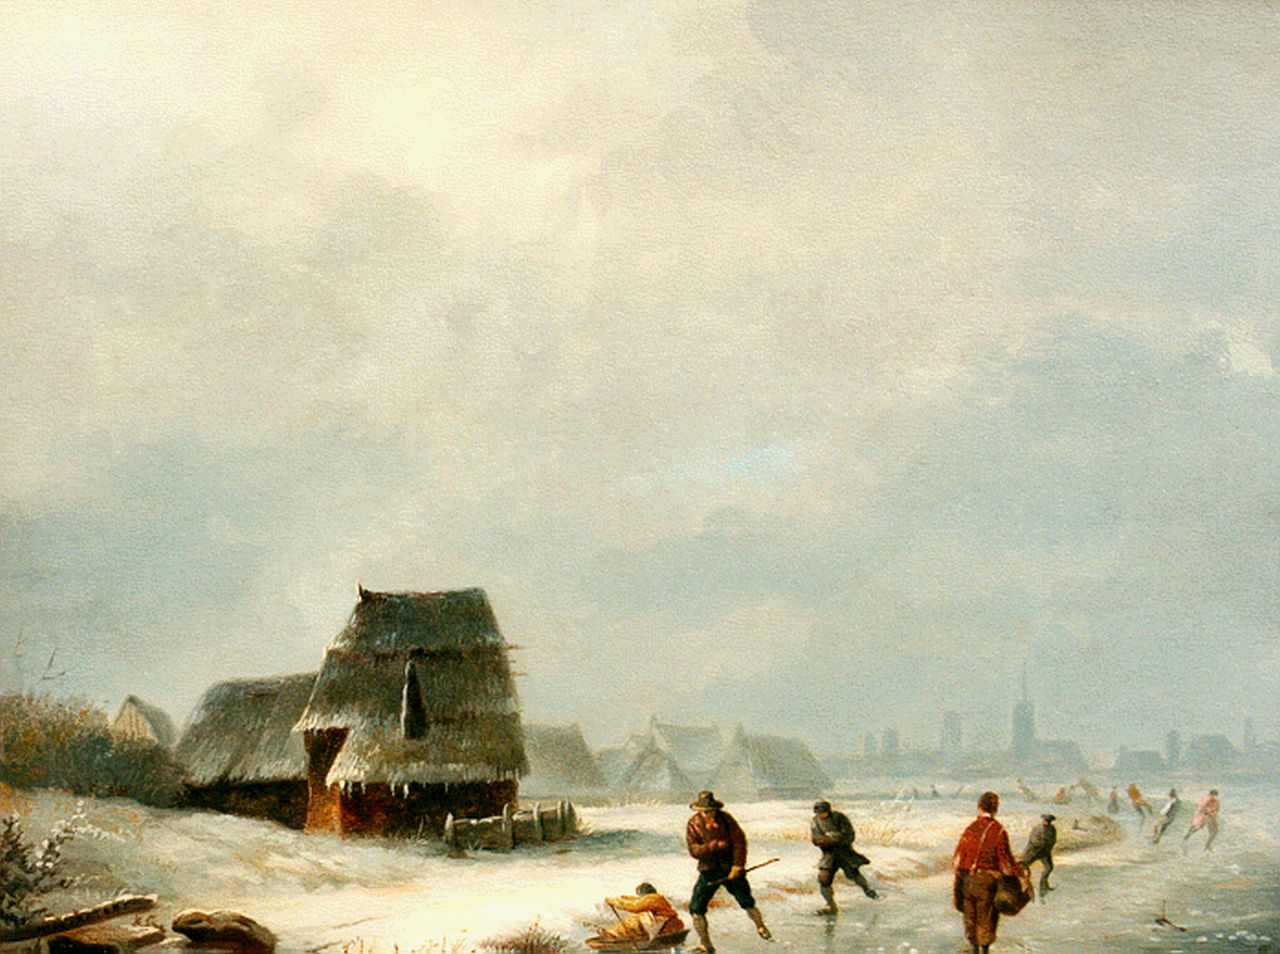 Pratere H. de | Henri de Pratere, Skaters on a frozen waterway, oil on panel 32.4 x 40.7 cm, signed l.l.